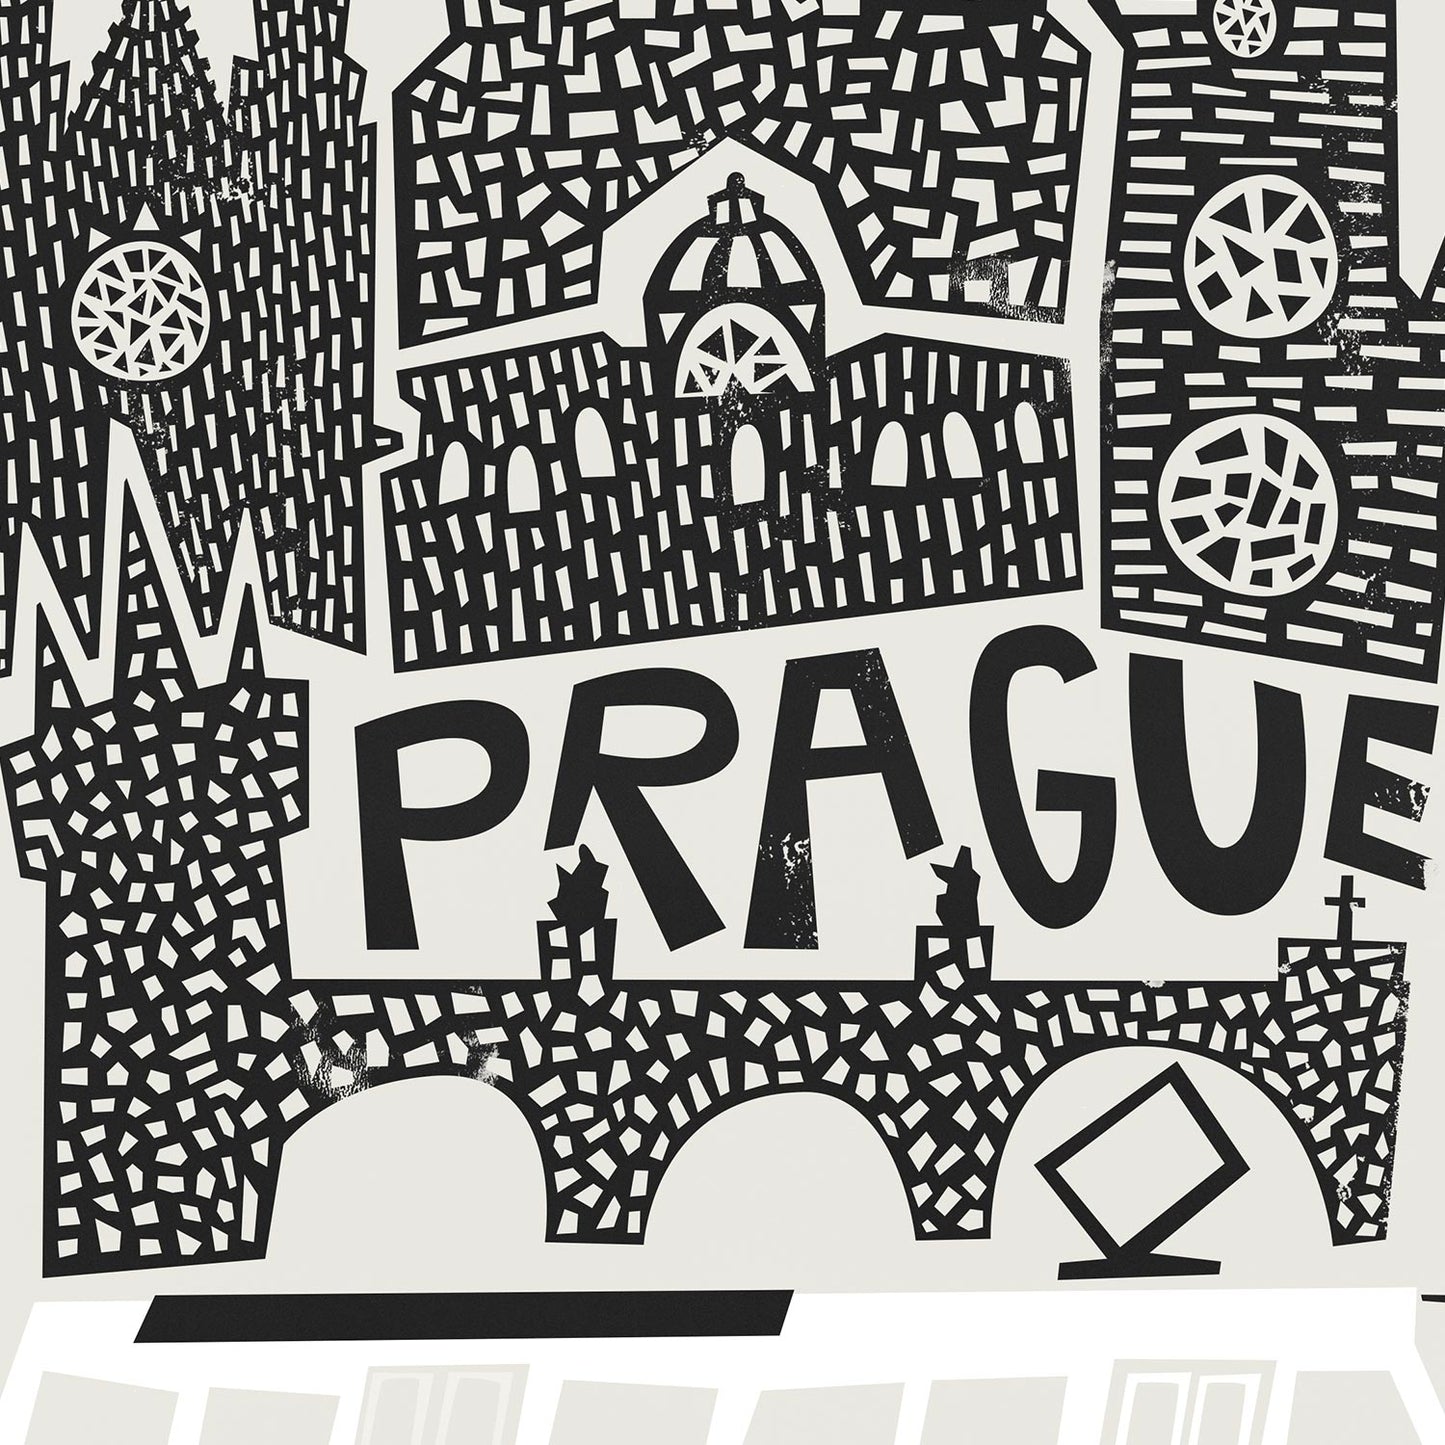 Prague City Print